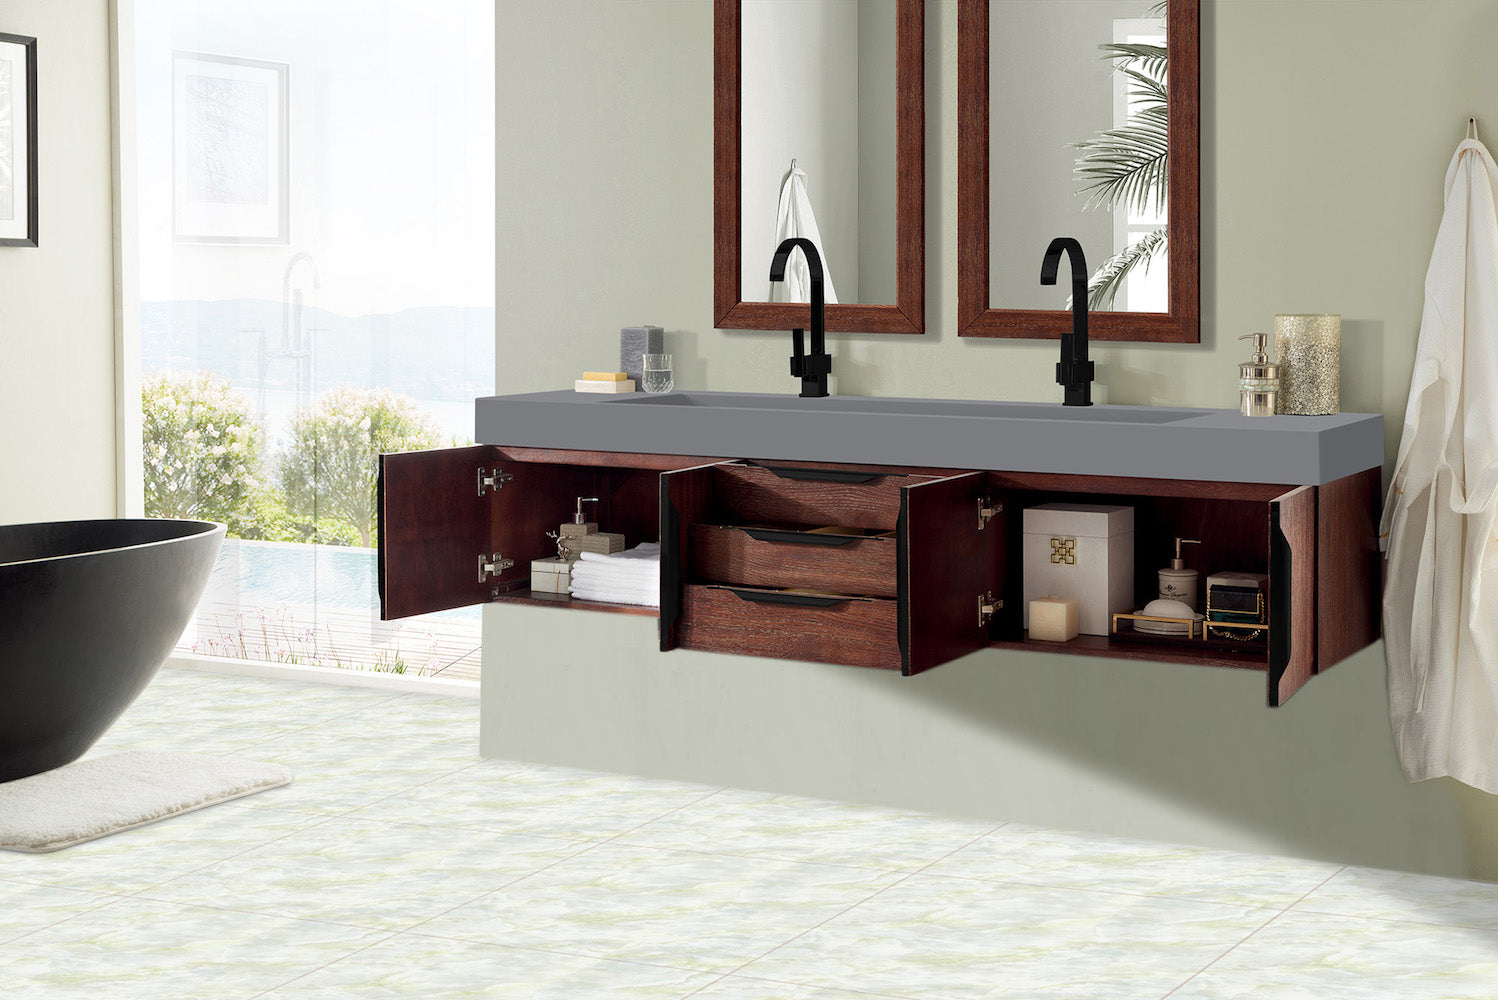 72" Mercer Island Double Sink Bathroom Vanity, Coffee Oak w/ Matte Black